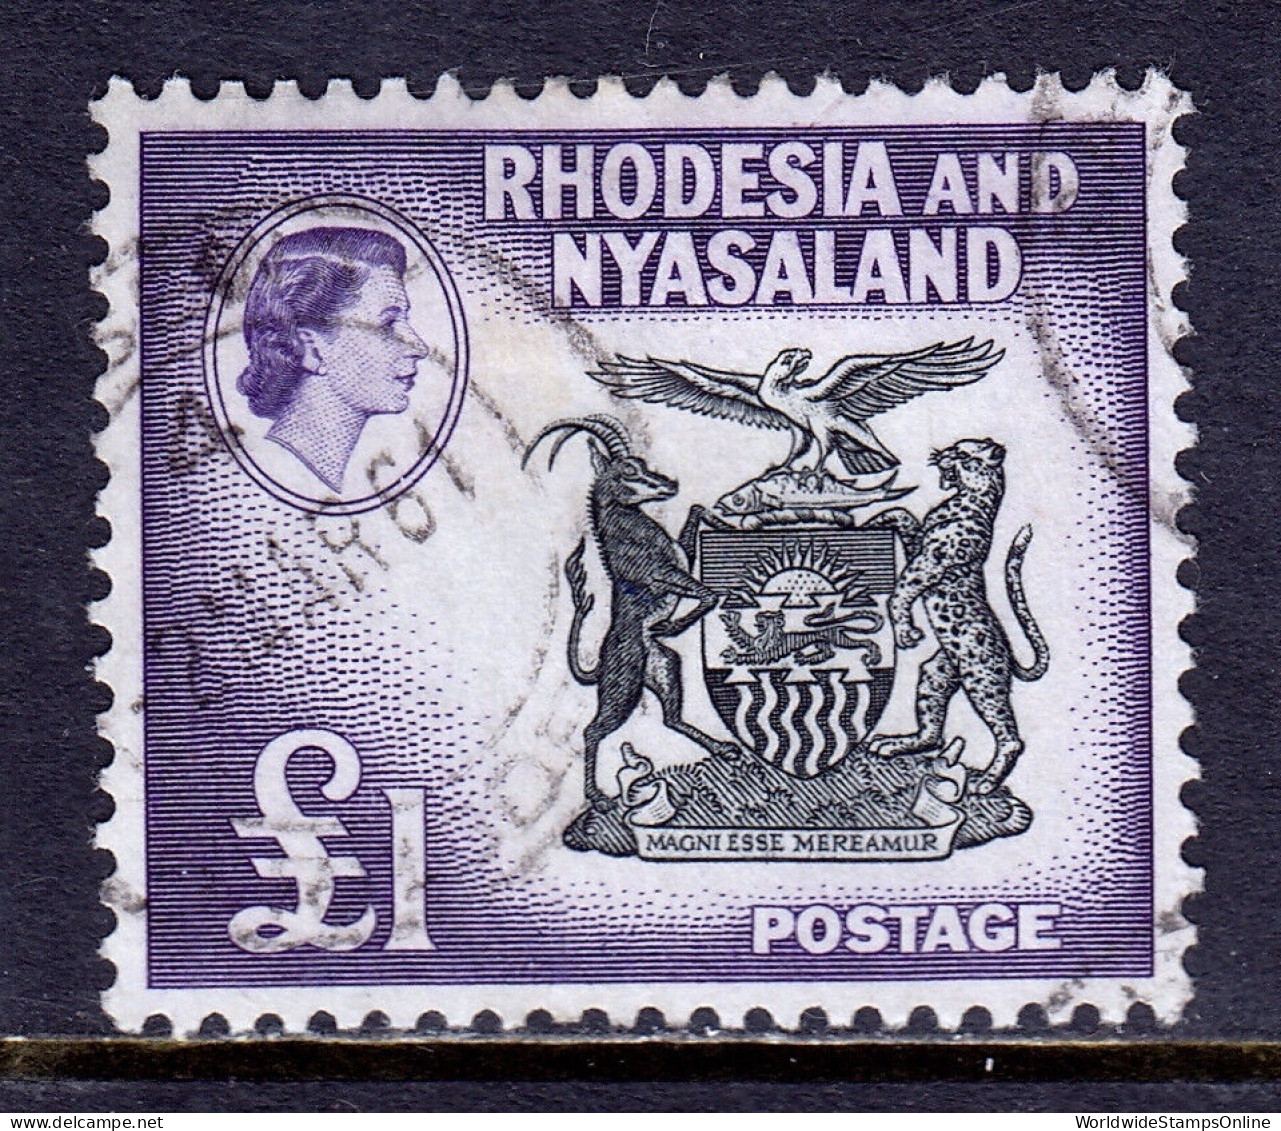 RHODESIA & NYASALAND — SCOTT 171 — 1959 £1 COAT OF ARMS — USED — SCV $67 - Rhodesien & Nyasaland (1954-1963)